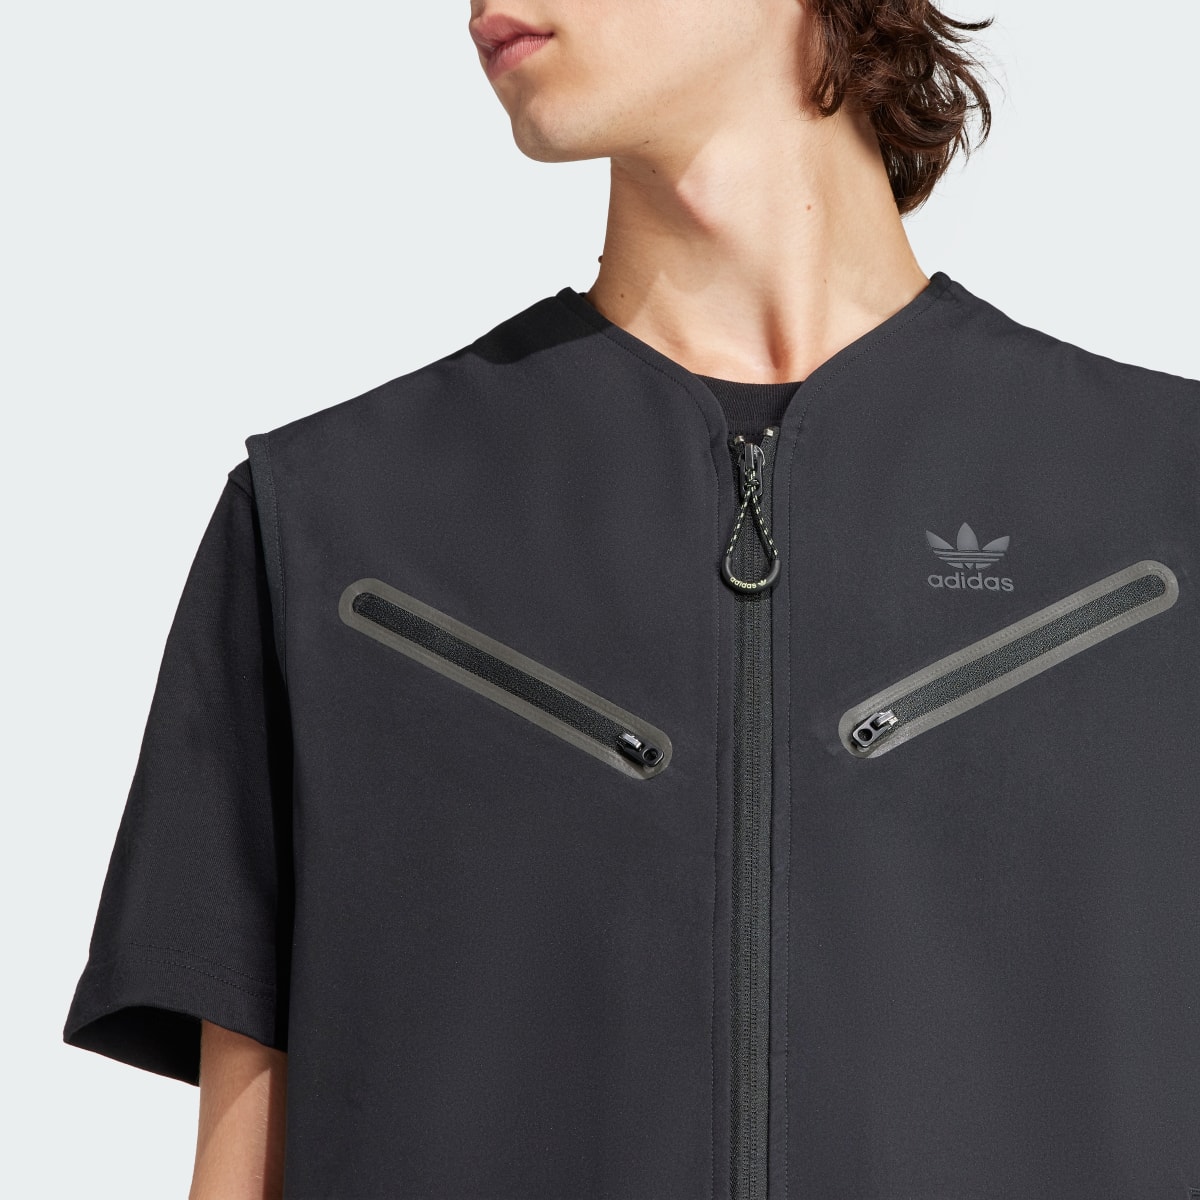 Adidas Premium Montreal Vest. 6